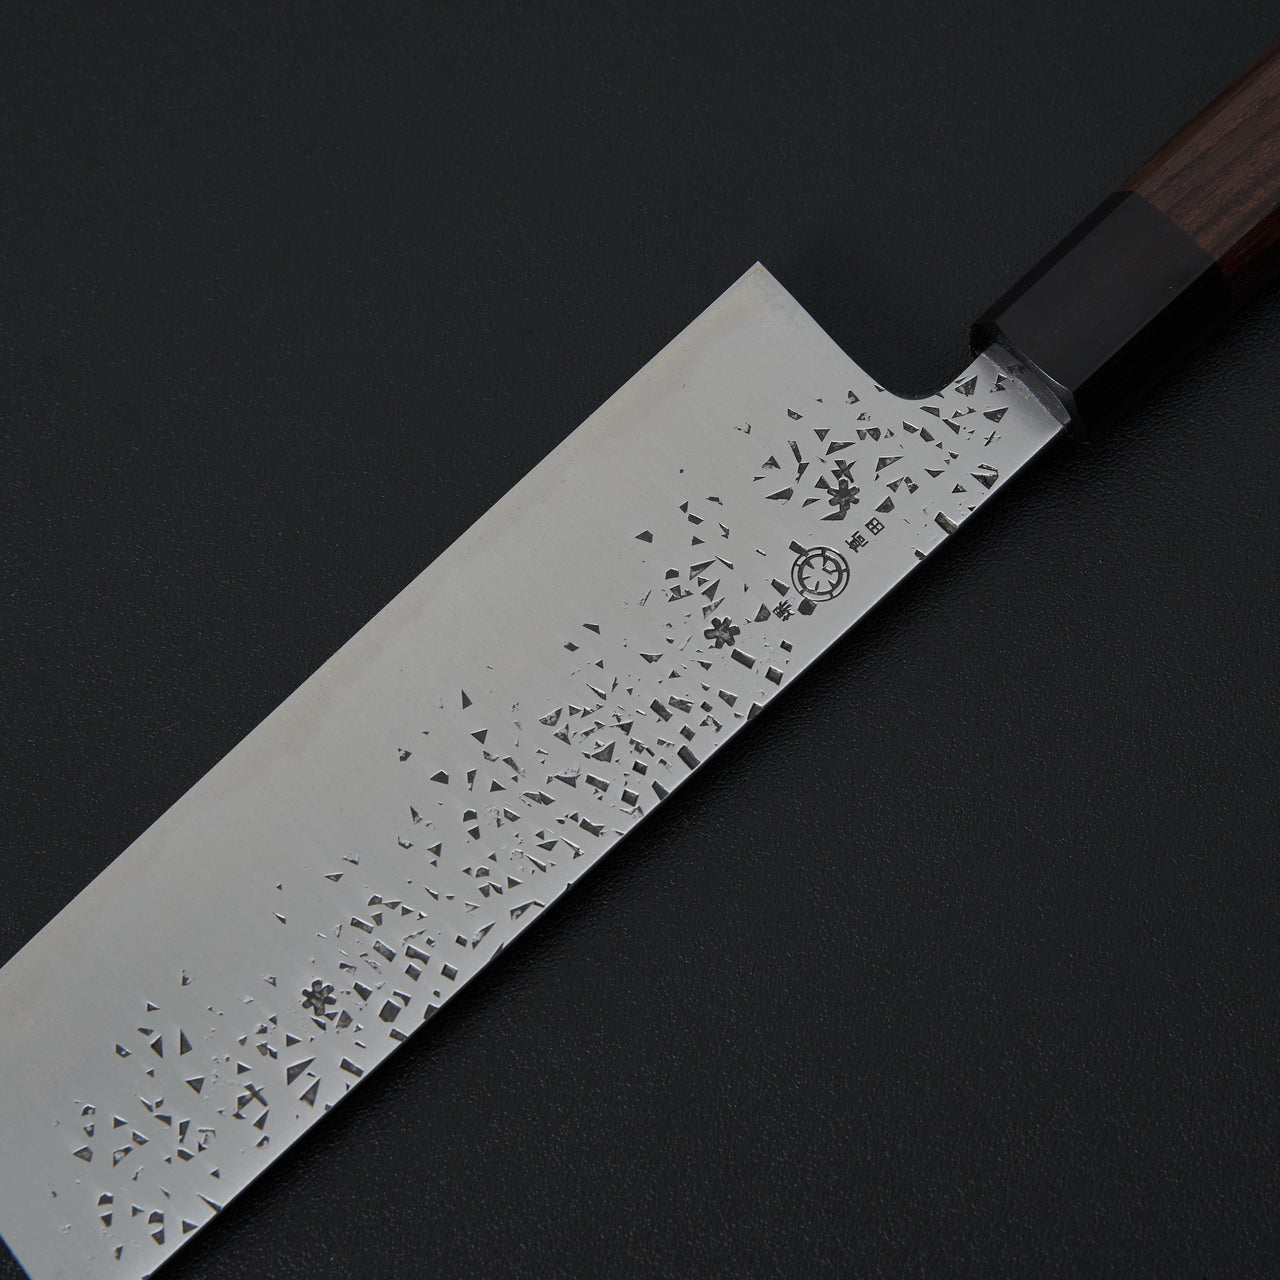 Takada no Hamono Reika White #2 Nakiri 180mm-Knife-Takada no Hamono-Carbon Knife Co